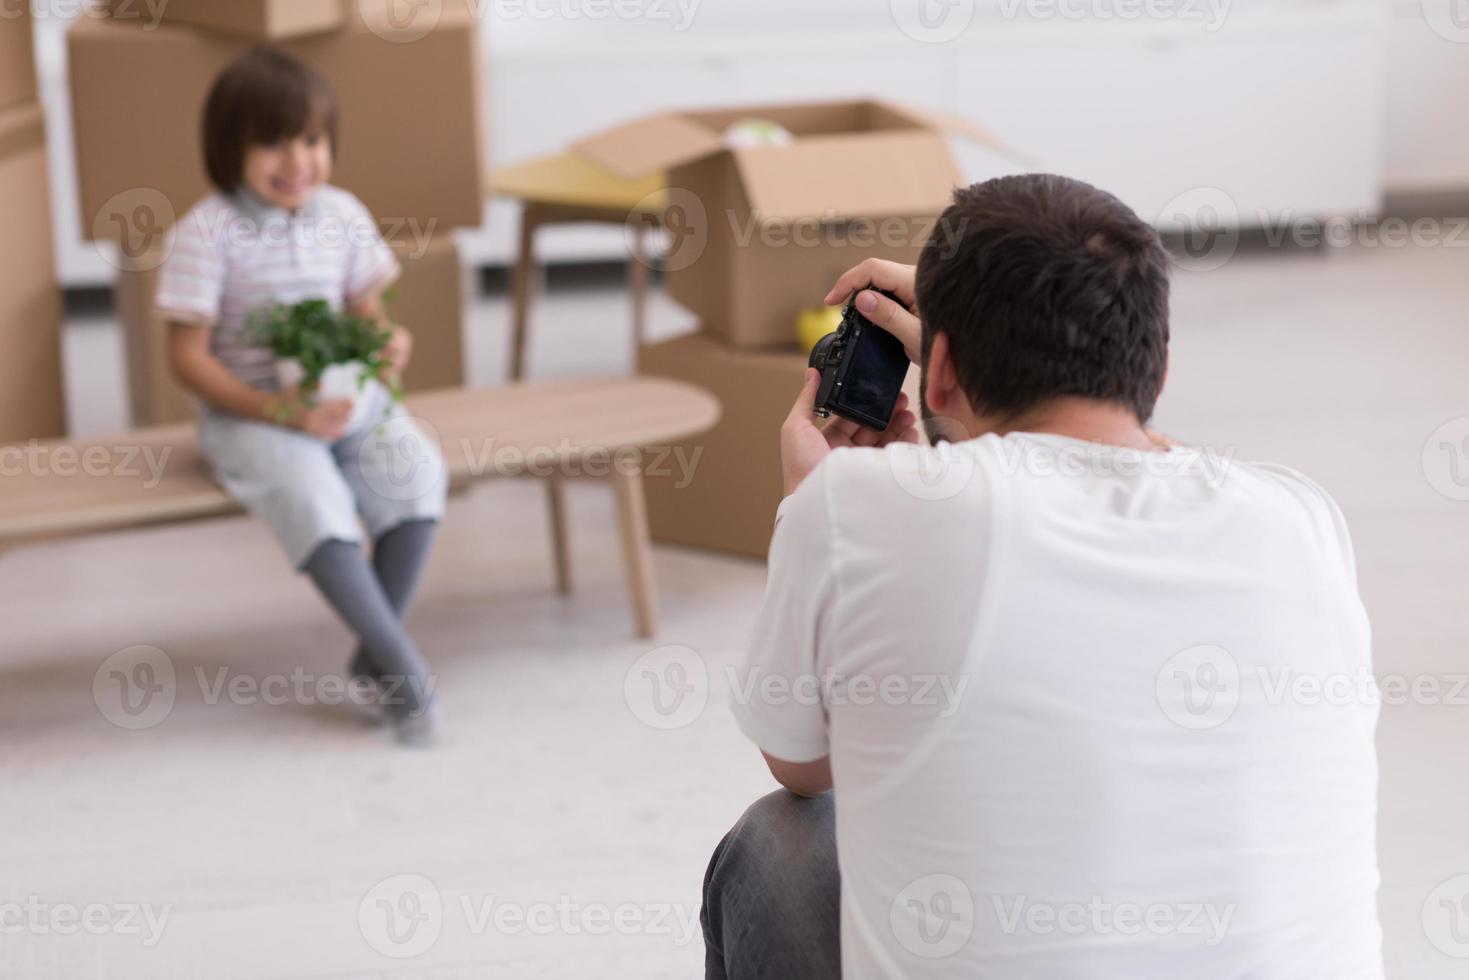 Photoshooting with kid model photo